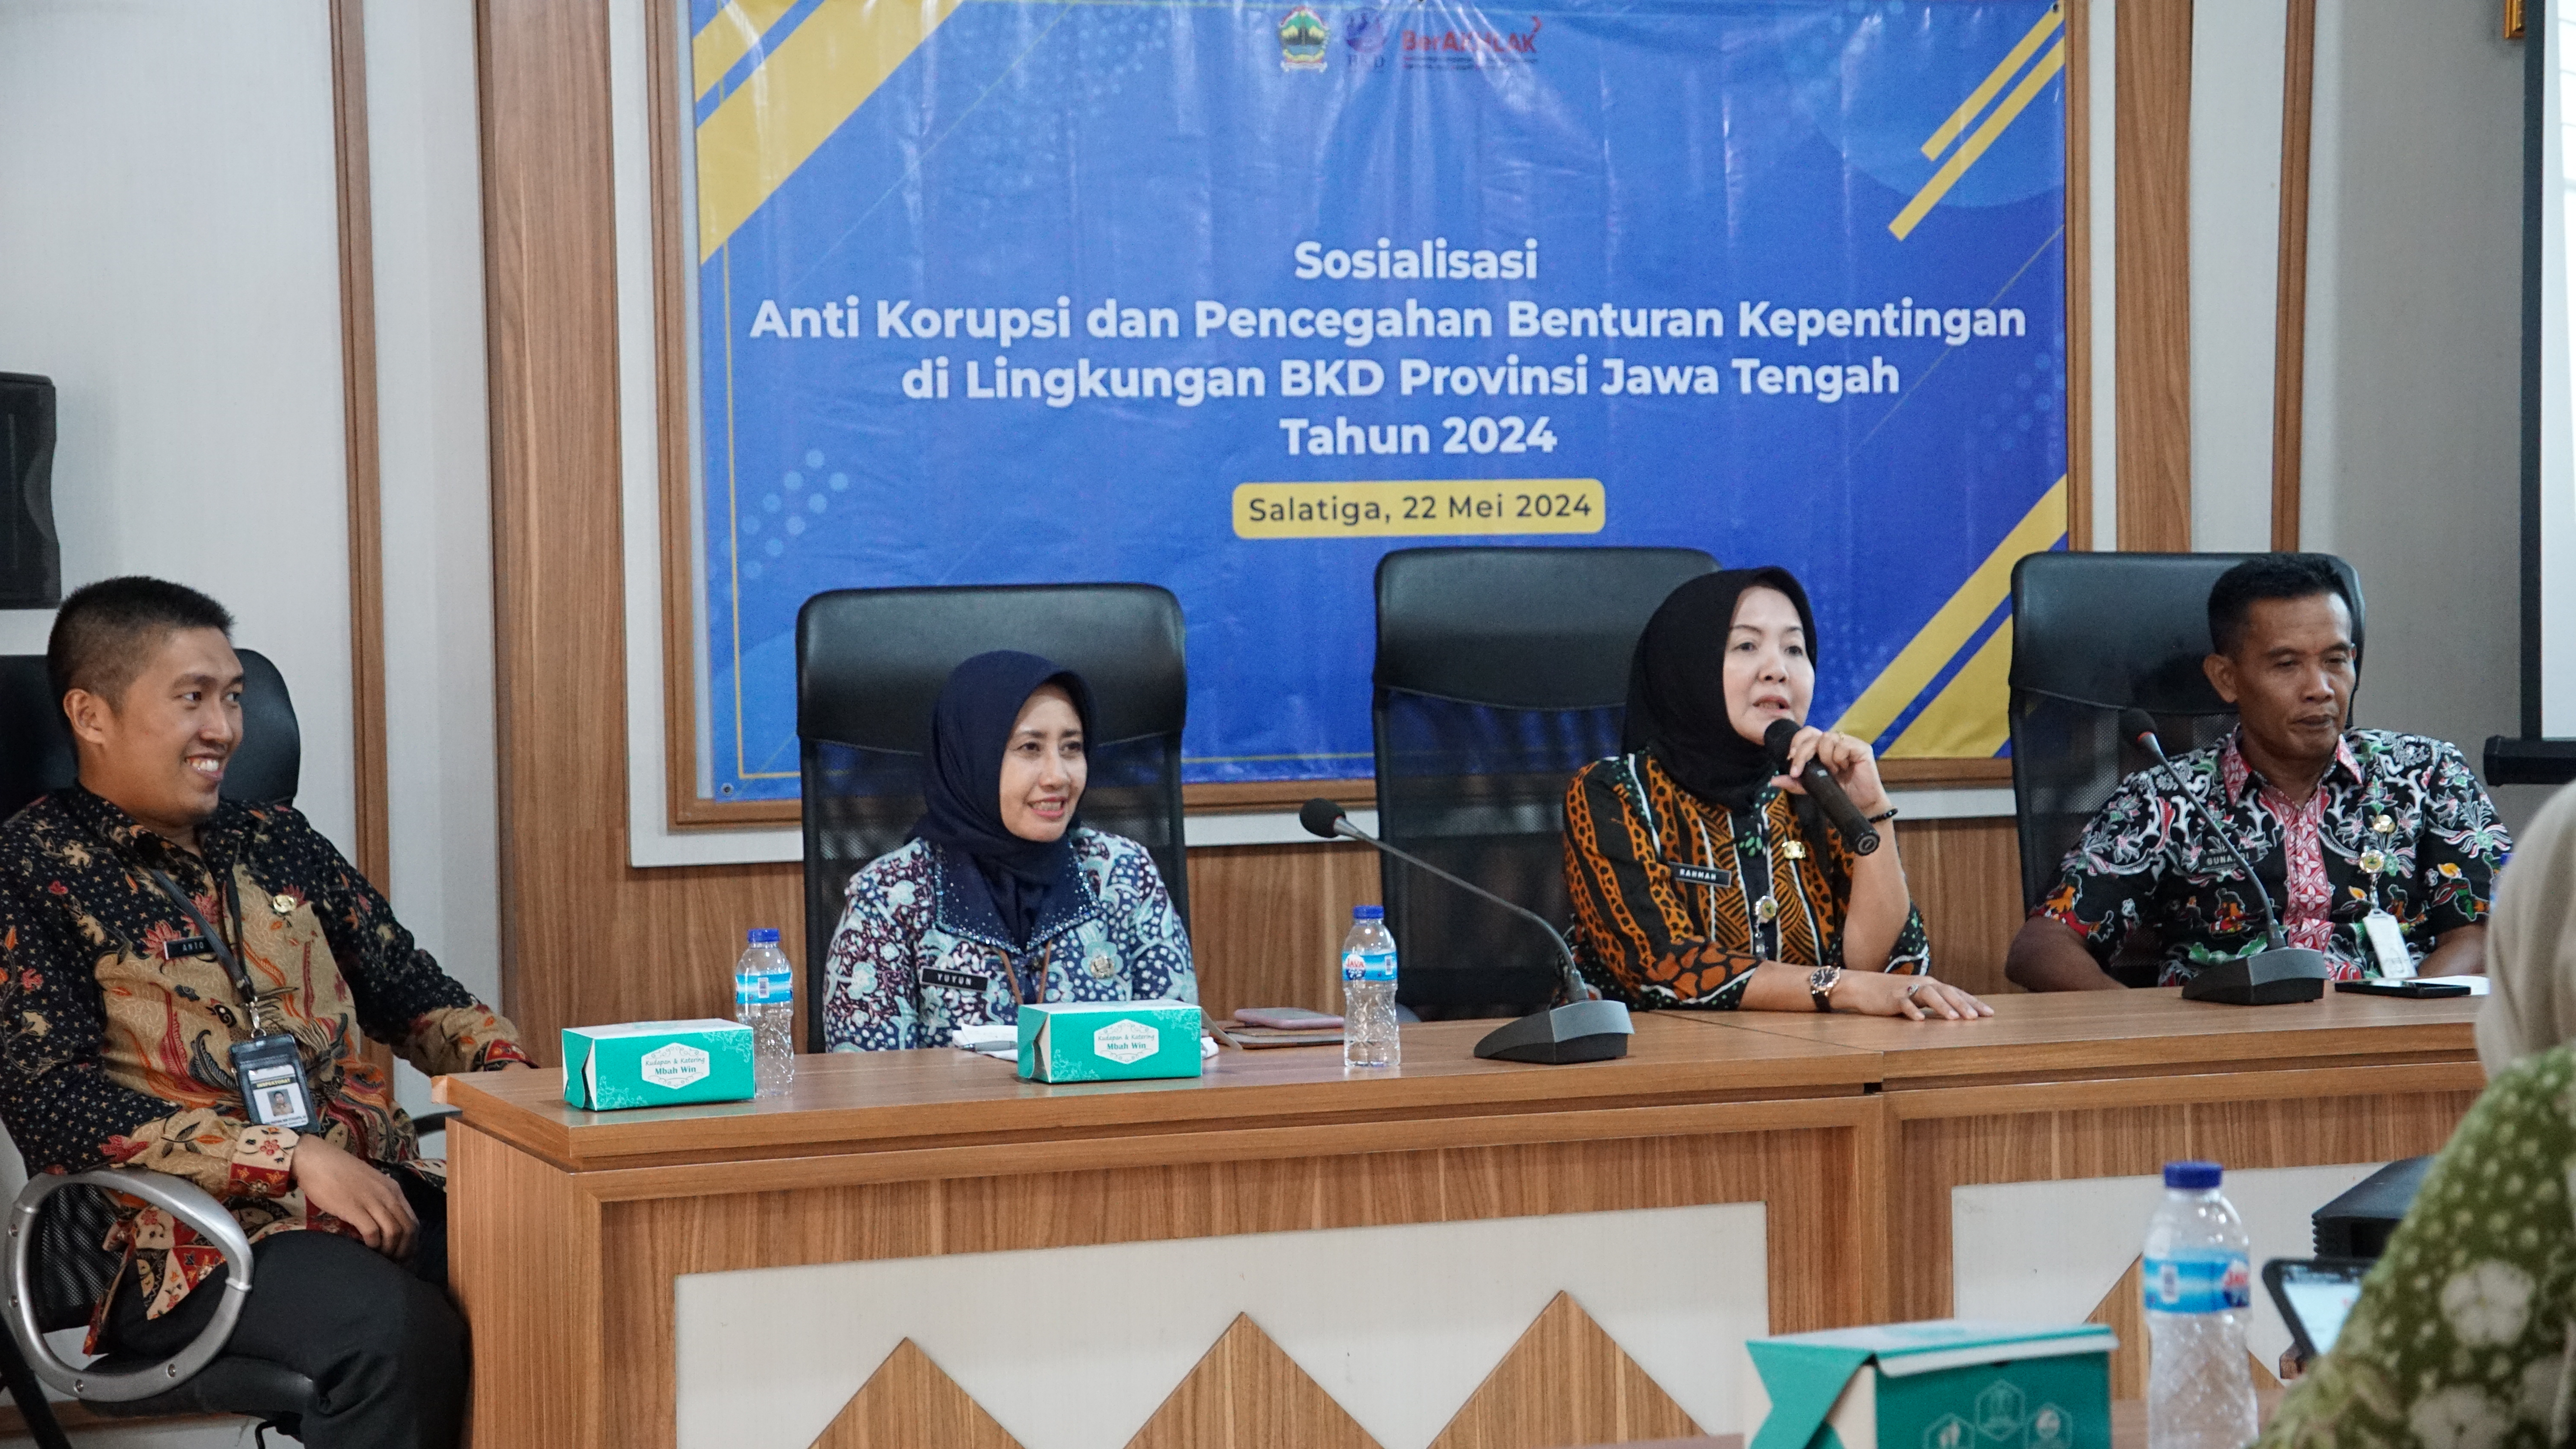 Sosialisasi Anti Korupsi dan Pencegahan Benturan Kepentingan di Lingkungan BKD Provinsi Jawa Tengah Tahun 2024